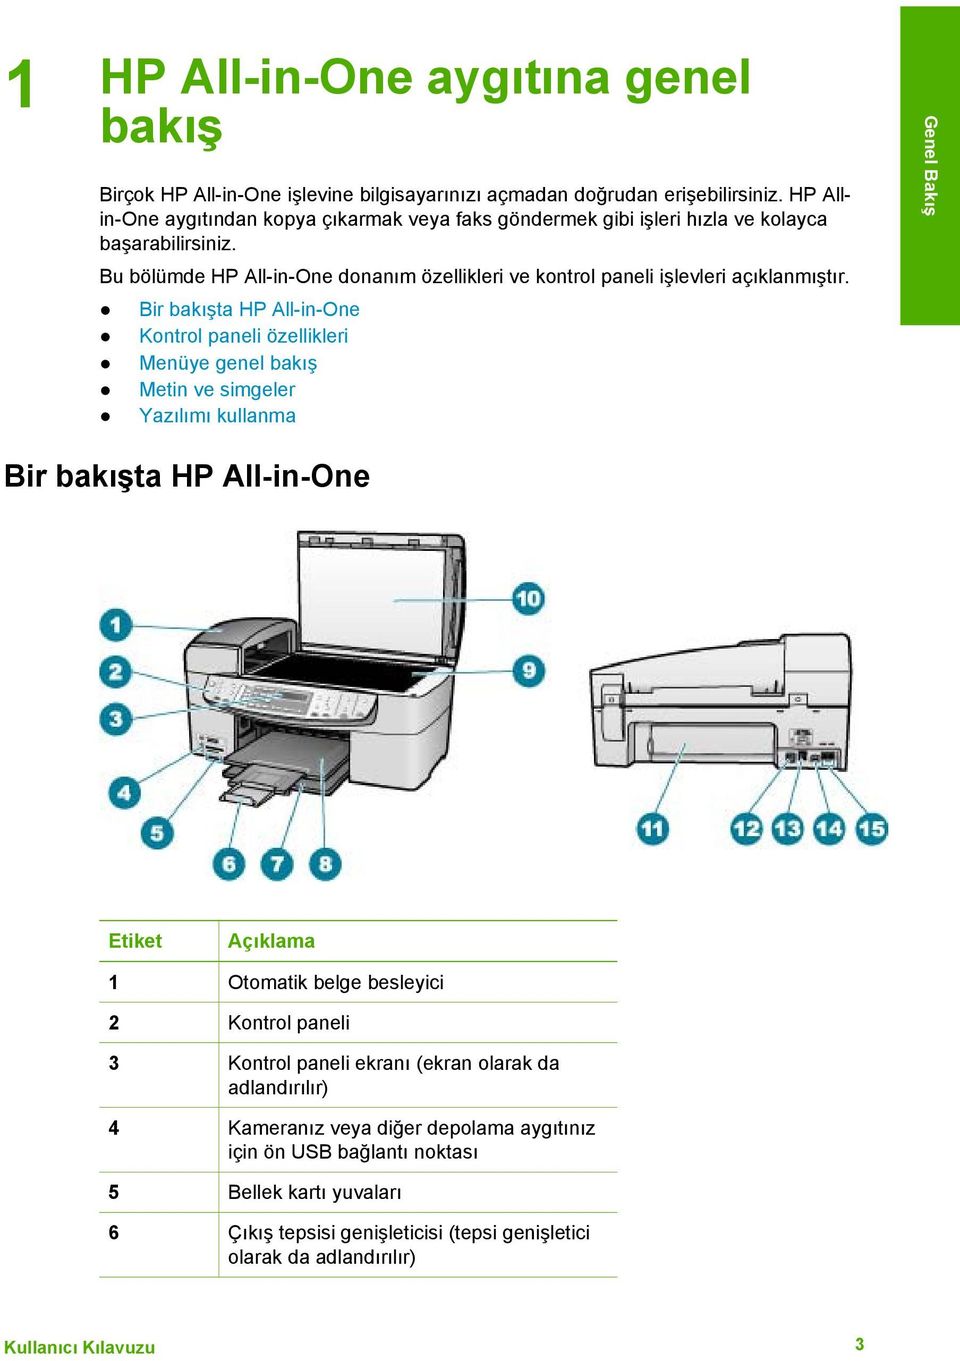 Bu bölümde HP All-in-One donanım özellikleri ve kontrol paneli işlevleri açıklanmıştır.